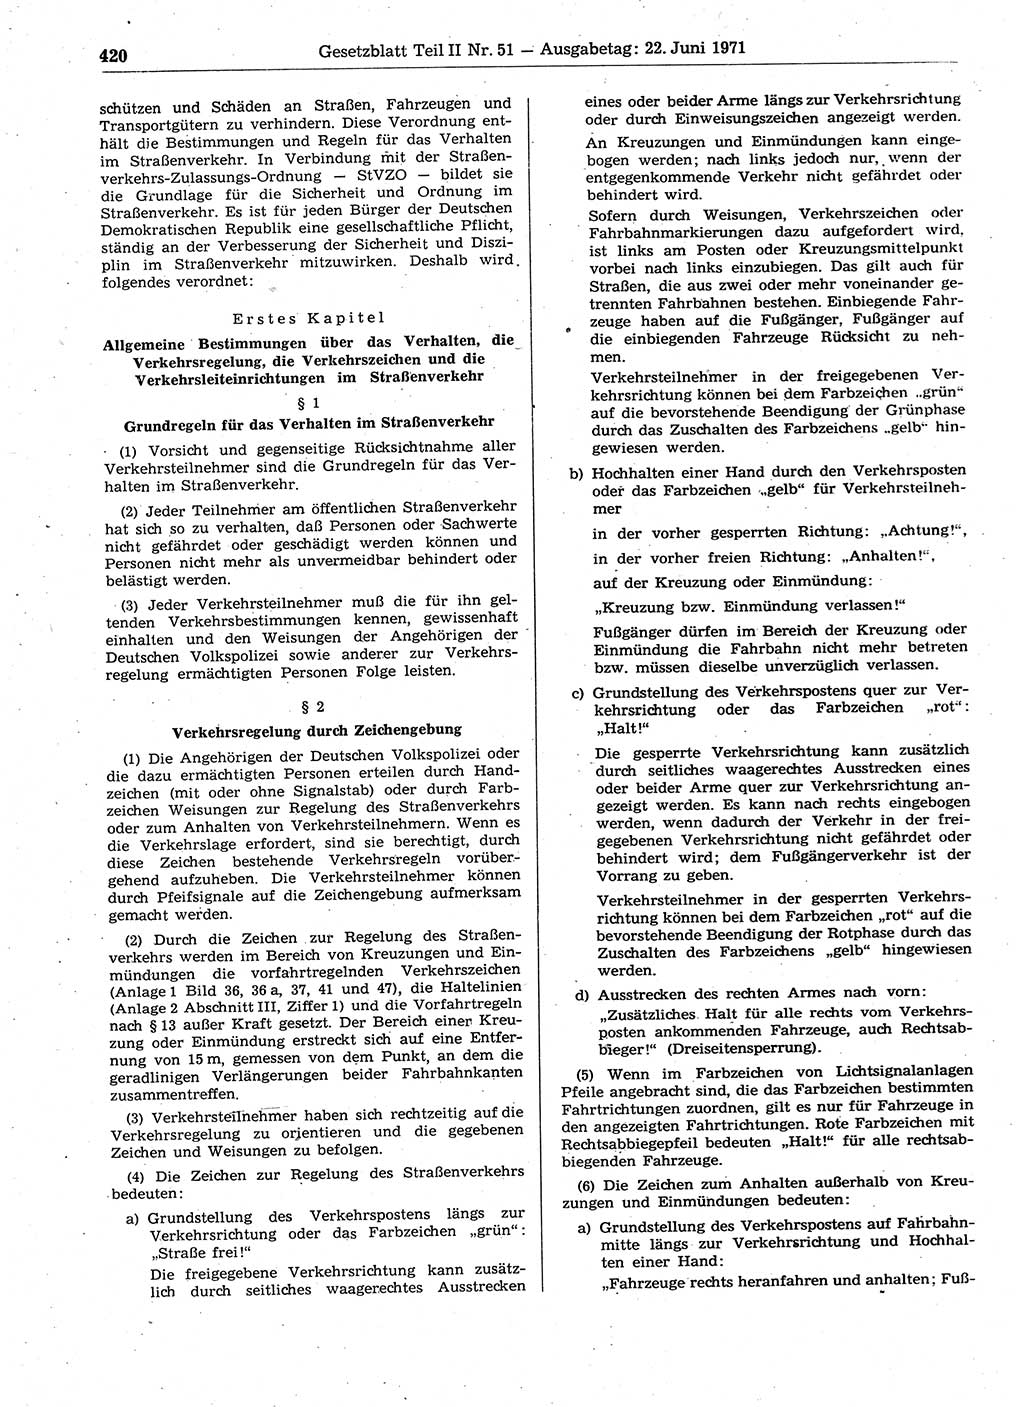 Gesetzblatt (GBl.) der Deutschen Demokratischen Republik (DDR) Teil ⅠⅠ 1971, Seite 420 (GBl. DDR ⅠⅠ 1971, S. 420)